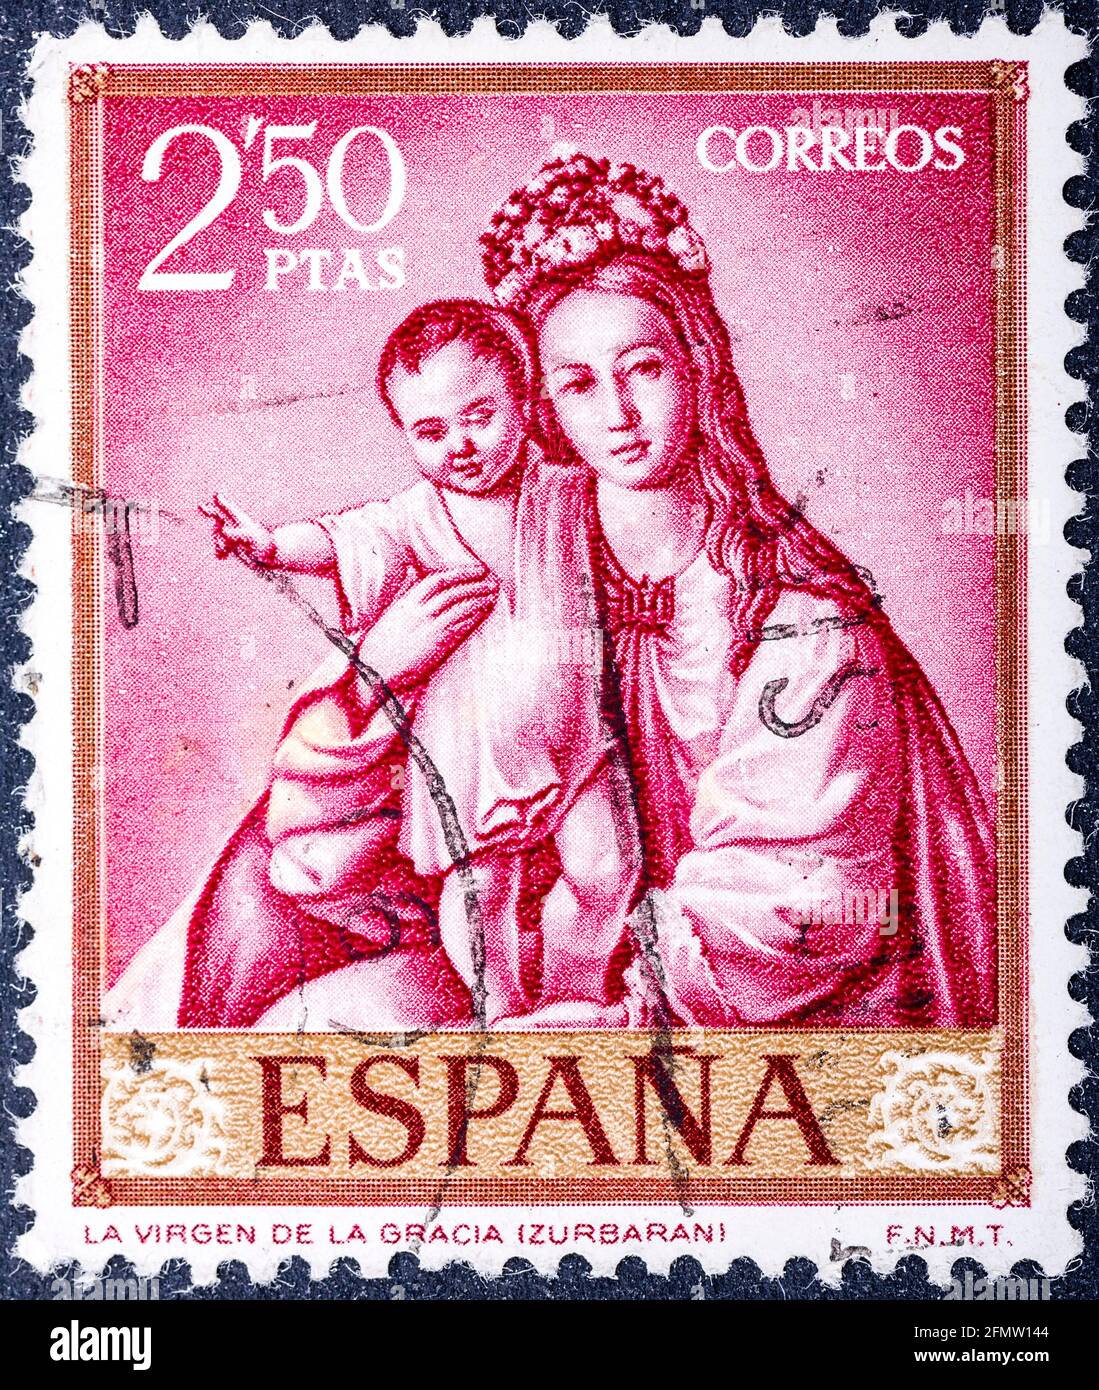 ESPAGNE - VERS 1962: Un timbre imprimé en Espagne montre notre Dame de grâce, peinture de Zurbaran, vers 1962 Banque D'Images